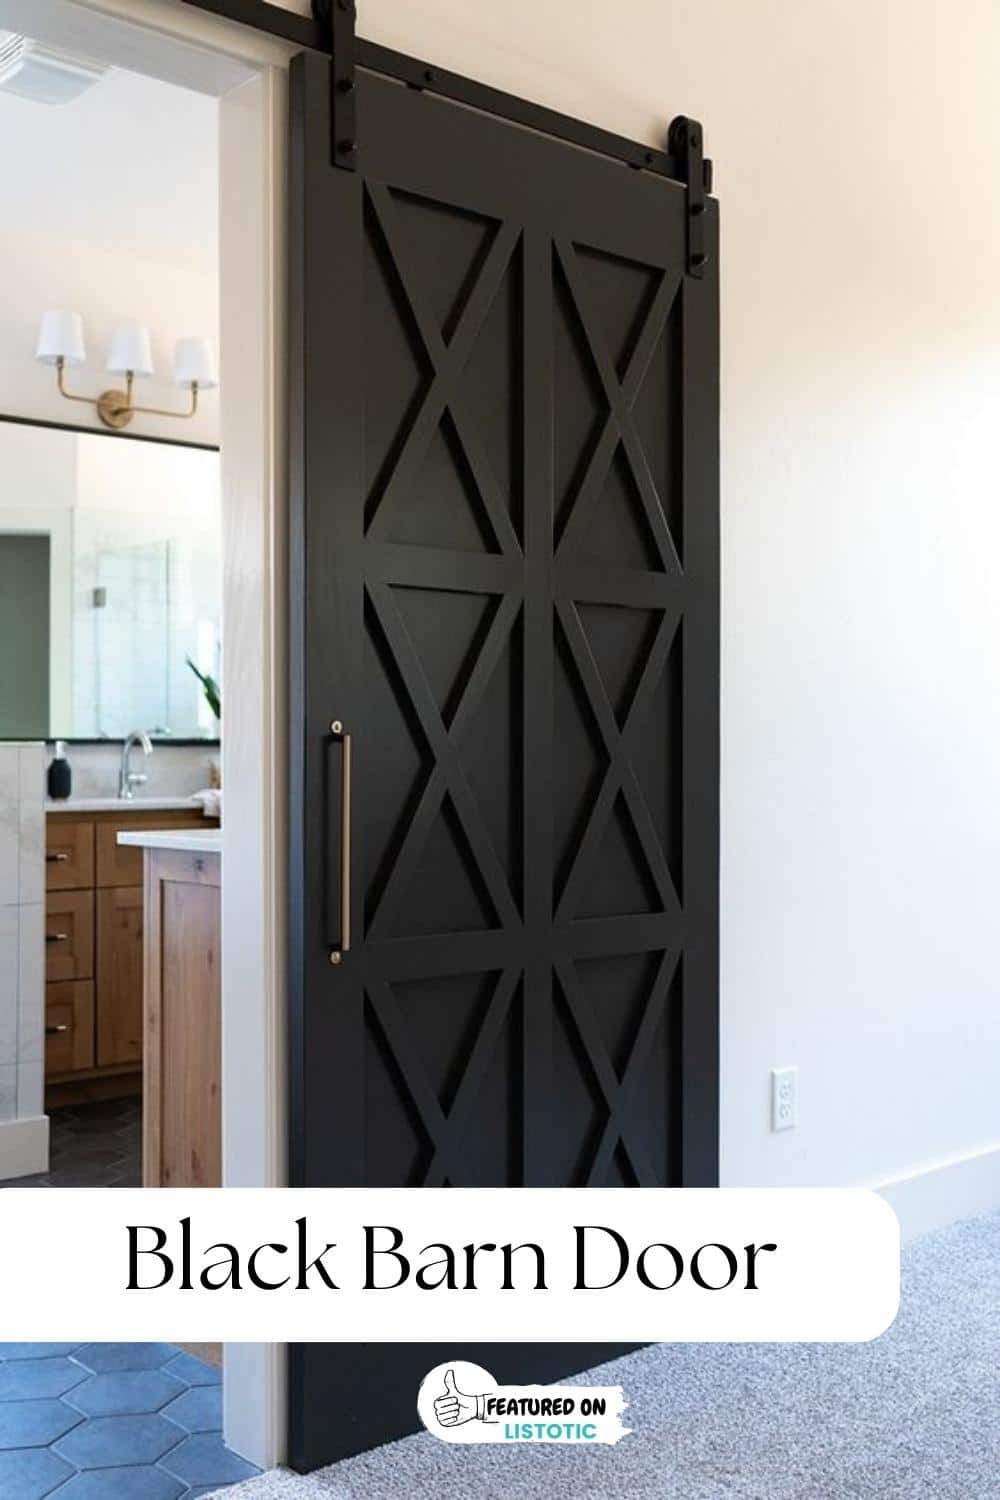 black bar door with x pattern